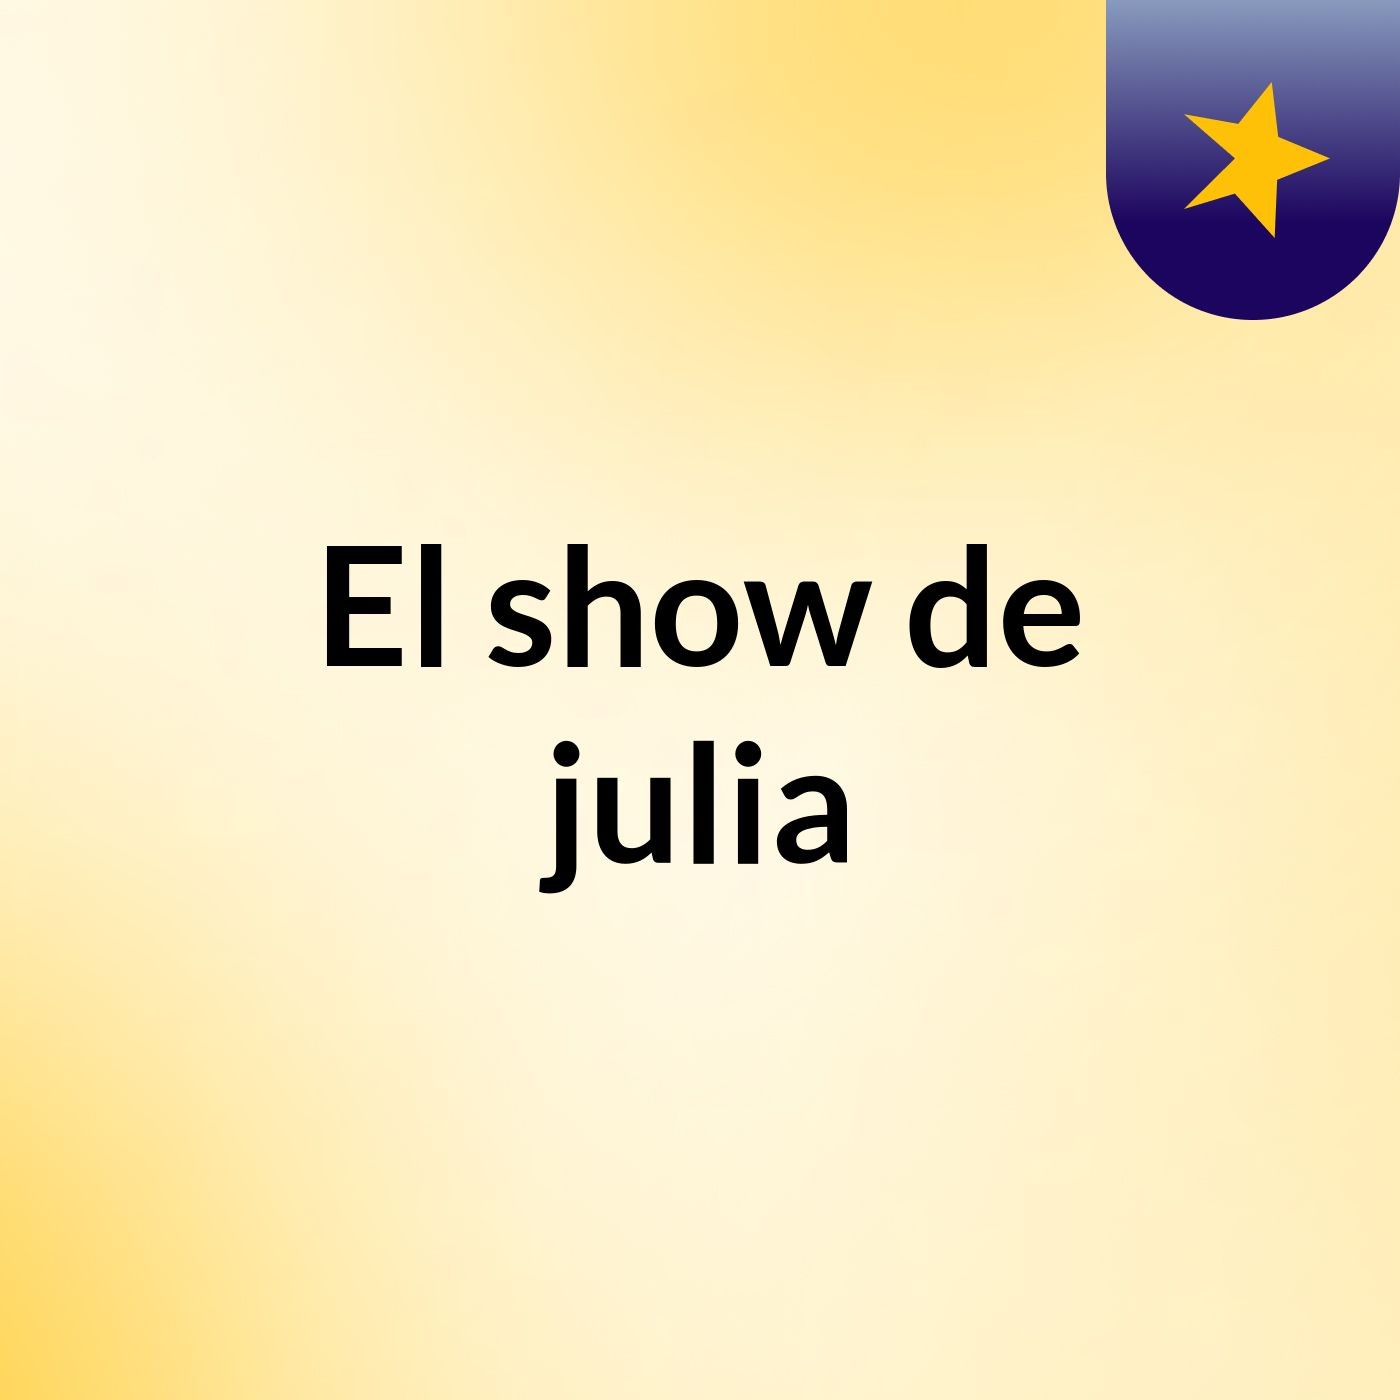 El show de julia